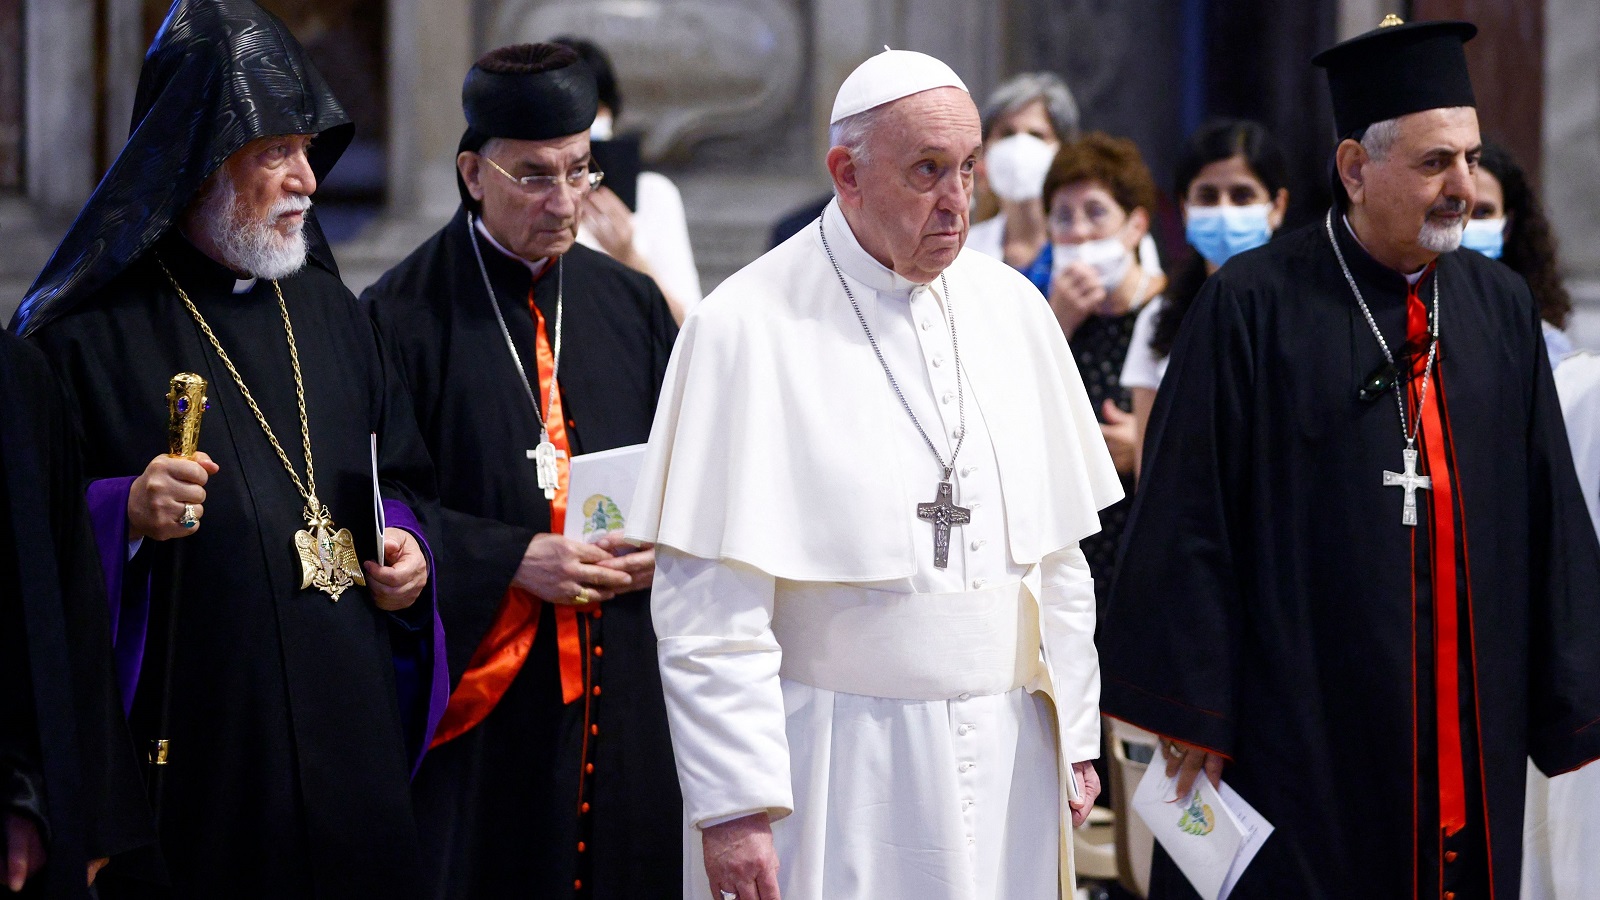 زيارة البابا لبنان مؤجلة حتى ينضج الحل وينتهي الانقسام